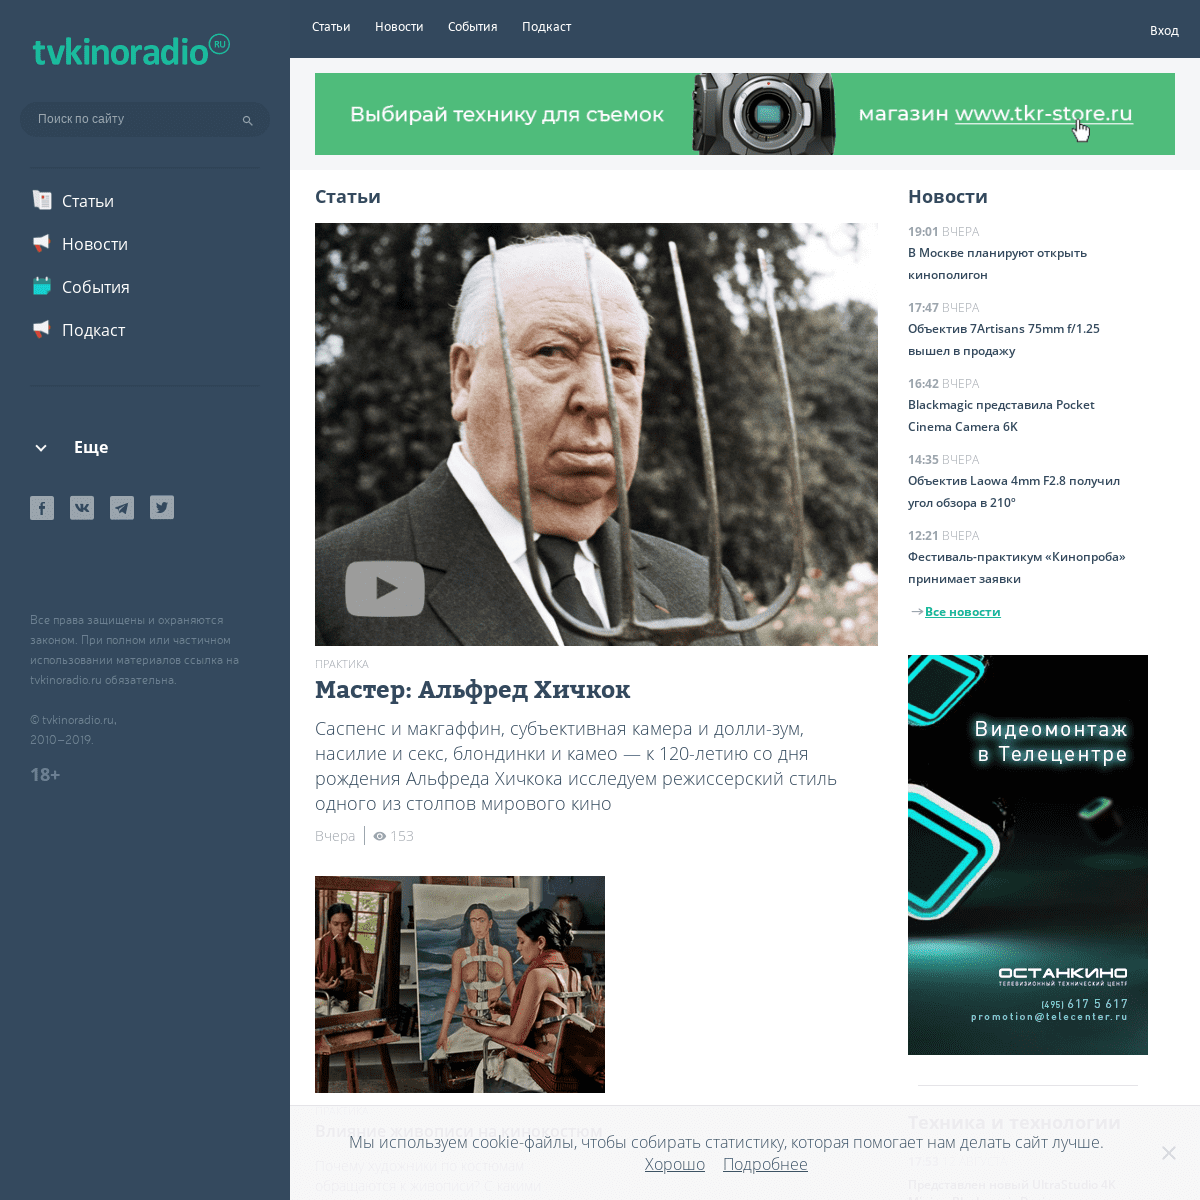 tvkinoradio.ru — портал о ТВ, кино и радио. Статьи, каталог оборудования и локаций